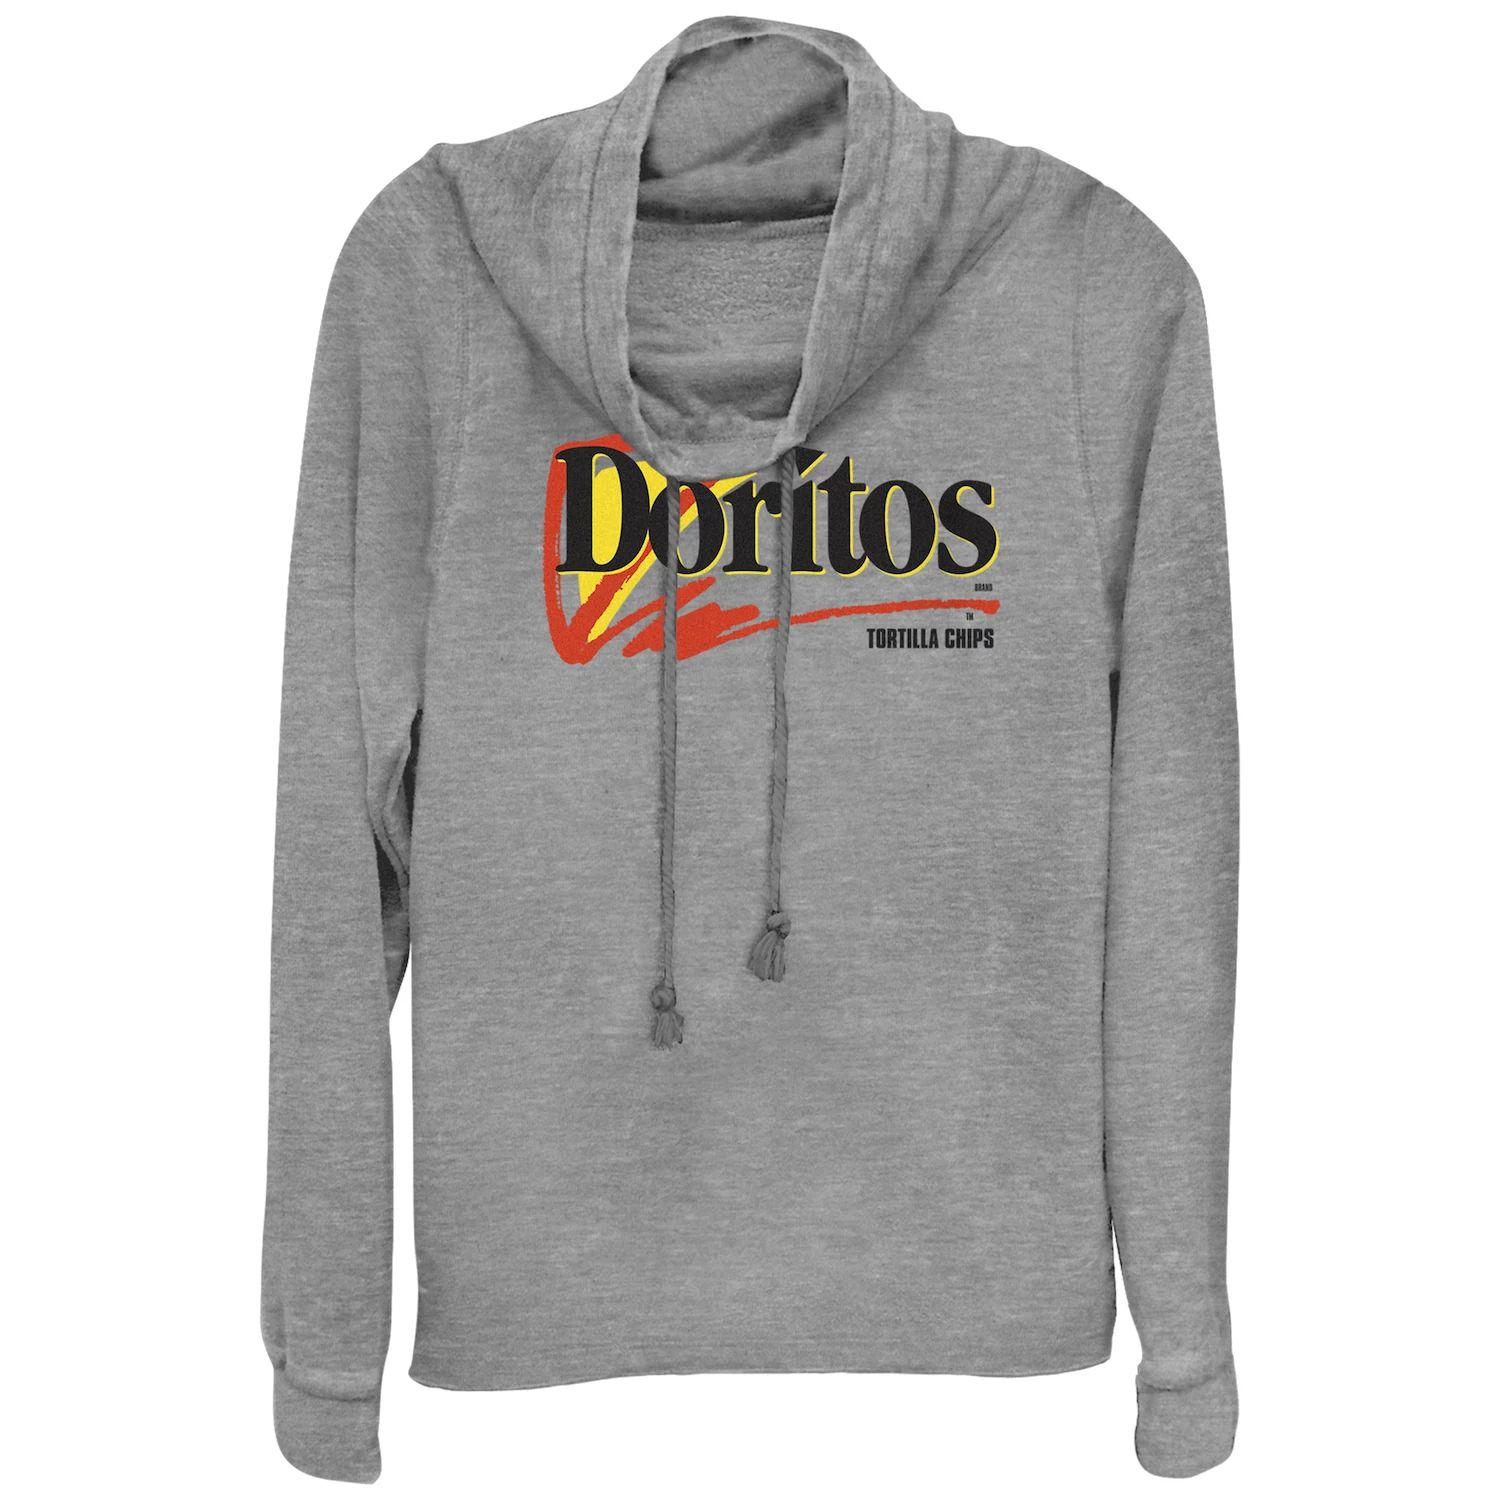 Пуловер с воротником-хомутом и логотипом Doritos Tortilla Chips для юниоров Doritos doritos dinamita flaming hot 145 gm